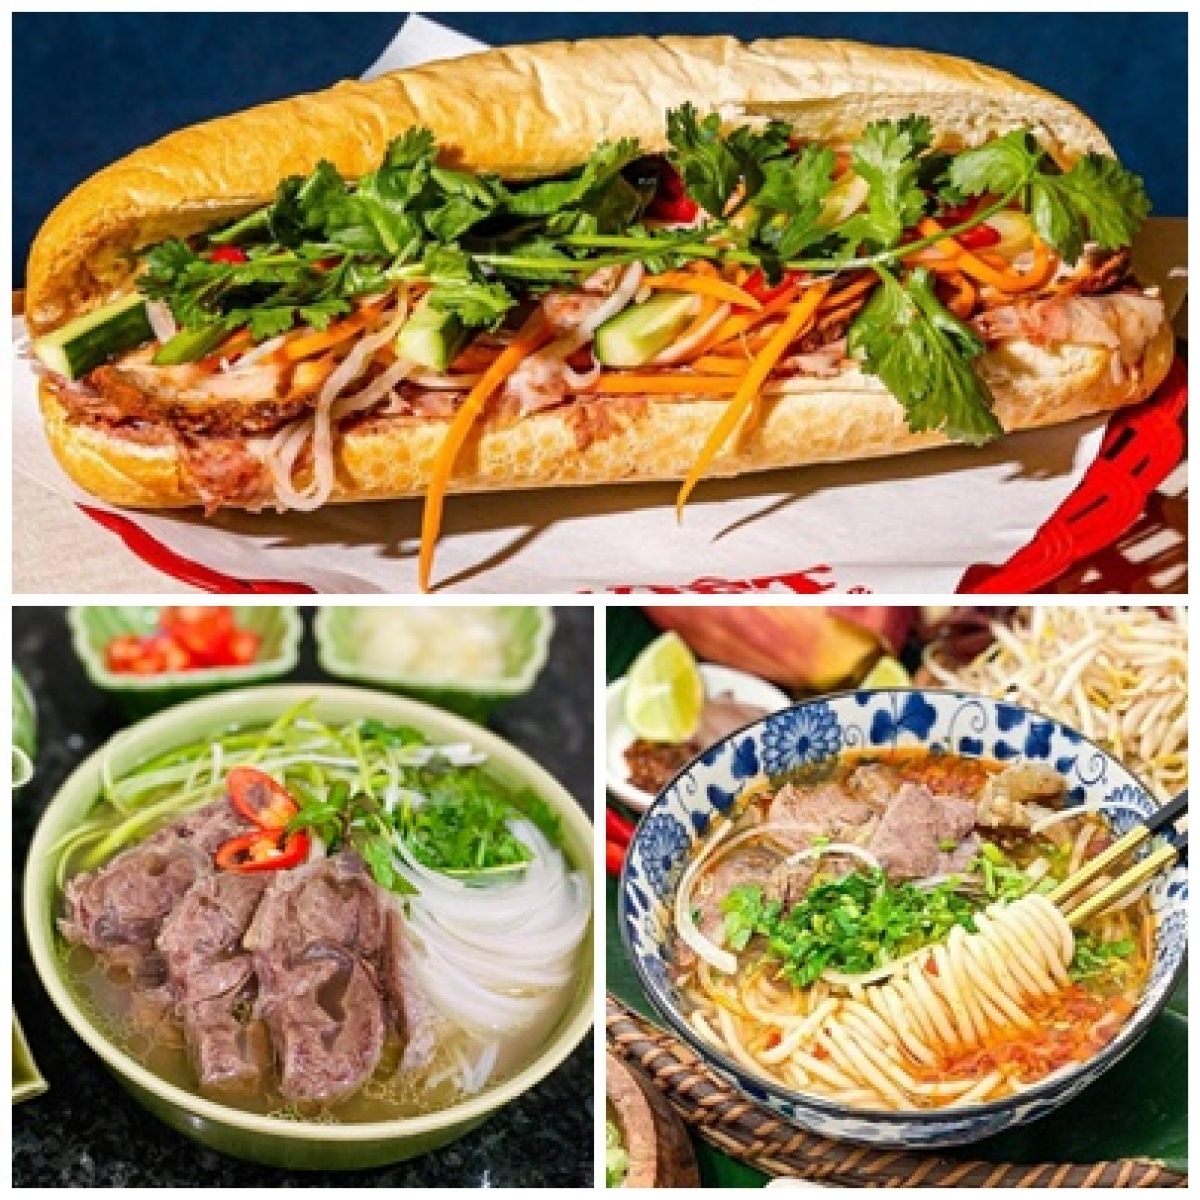 Bánh mì, phở, bún bò Huế... là những món ngon bạn bè quốc tế khuyên nên nếm thử khi đến Việt Nam